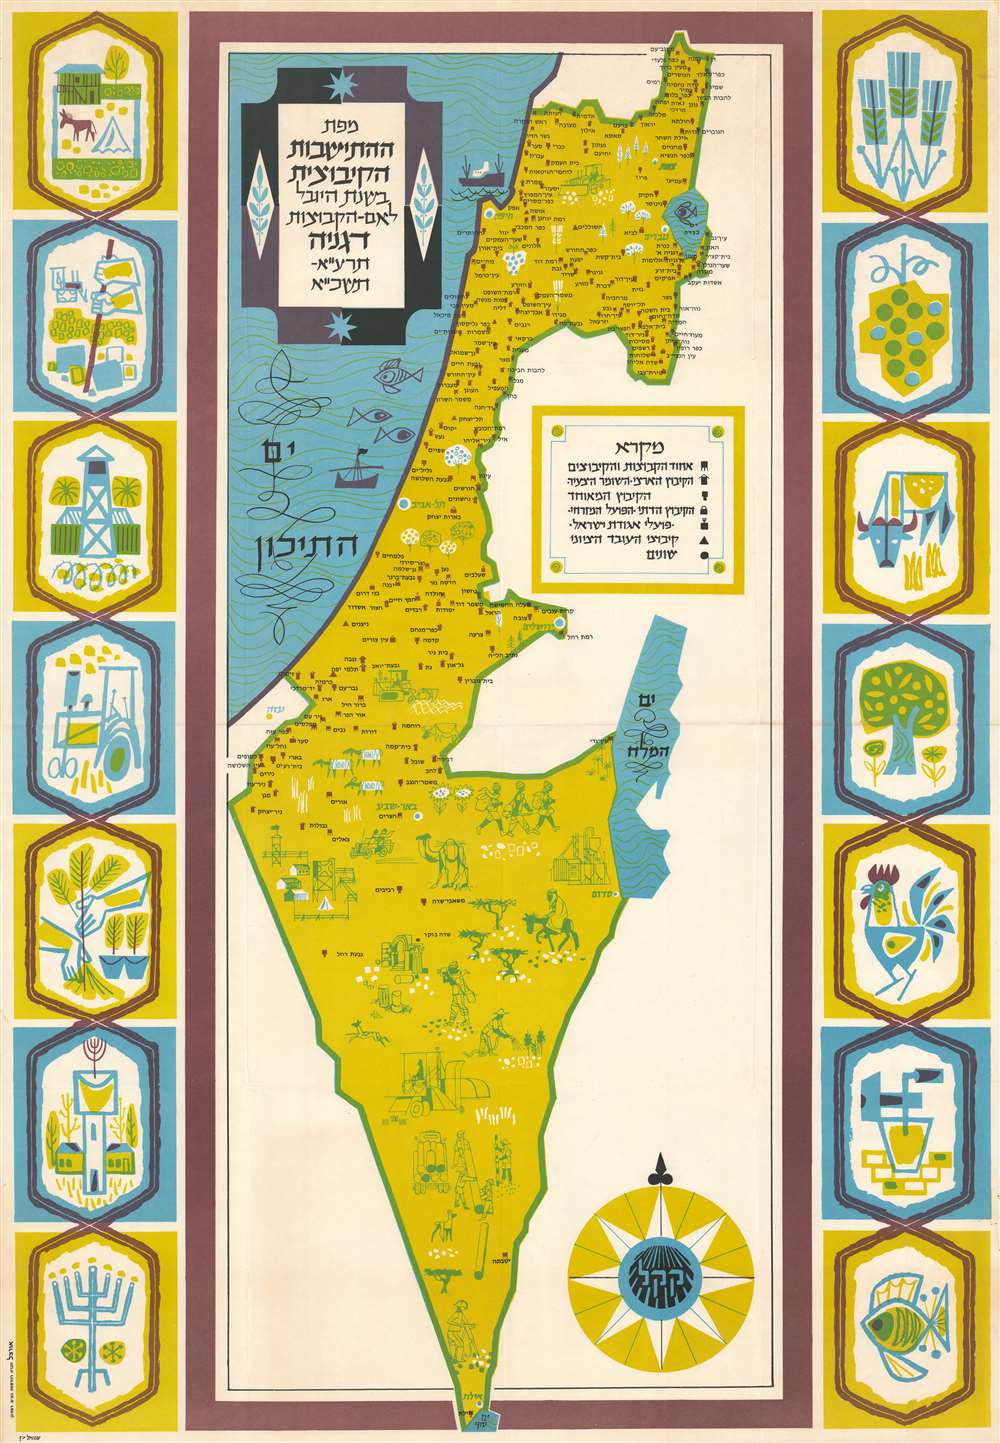 מפת ההתישבות הקיבוצית בשנת היובל לאם הקבוצות, דגניה, תzא-תשכא. / Map of the kibbutz settlement in the jubilee year for the mother of the groups, Degania, 191-1751. - Main View